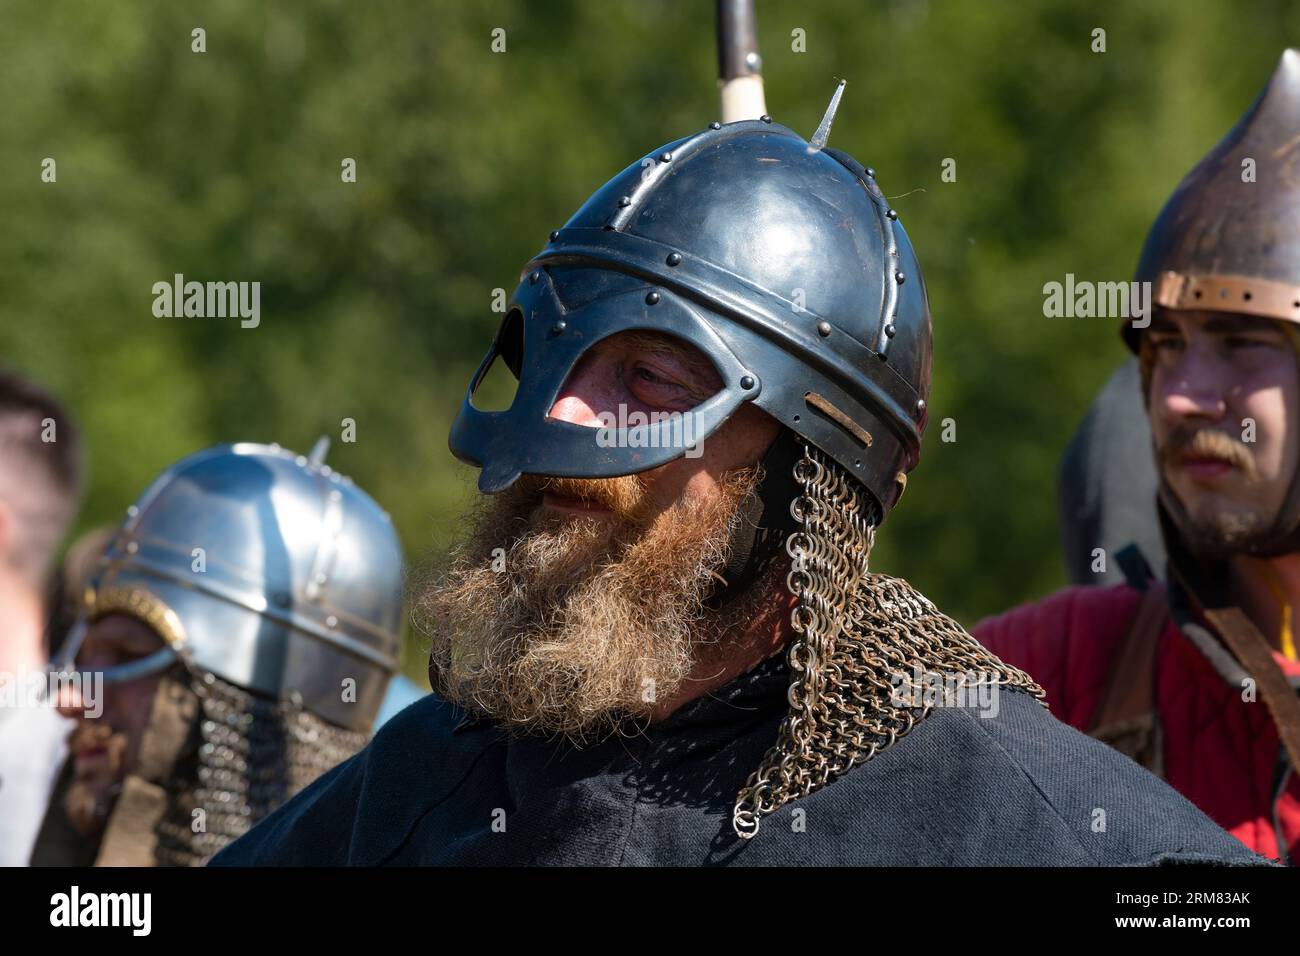 NOWGOROD REGION, RUSSLAND - 05. AUGUST 2023: Porträt eines mittelalterlichen Kriegers in einem Wikingerhelm (Gjermundbu-Helm). Historisches Festival 'Prince's Brothe Stockfoto